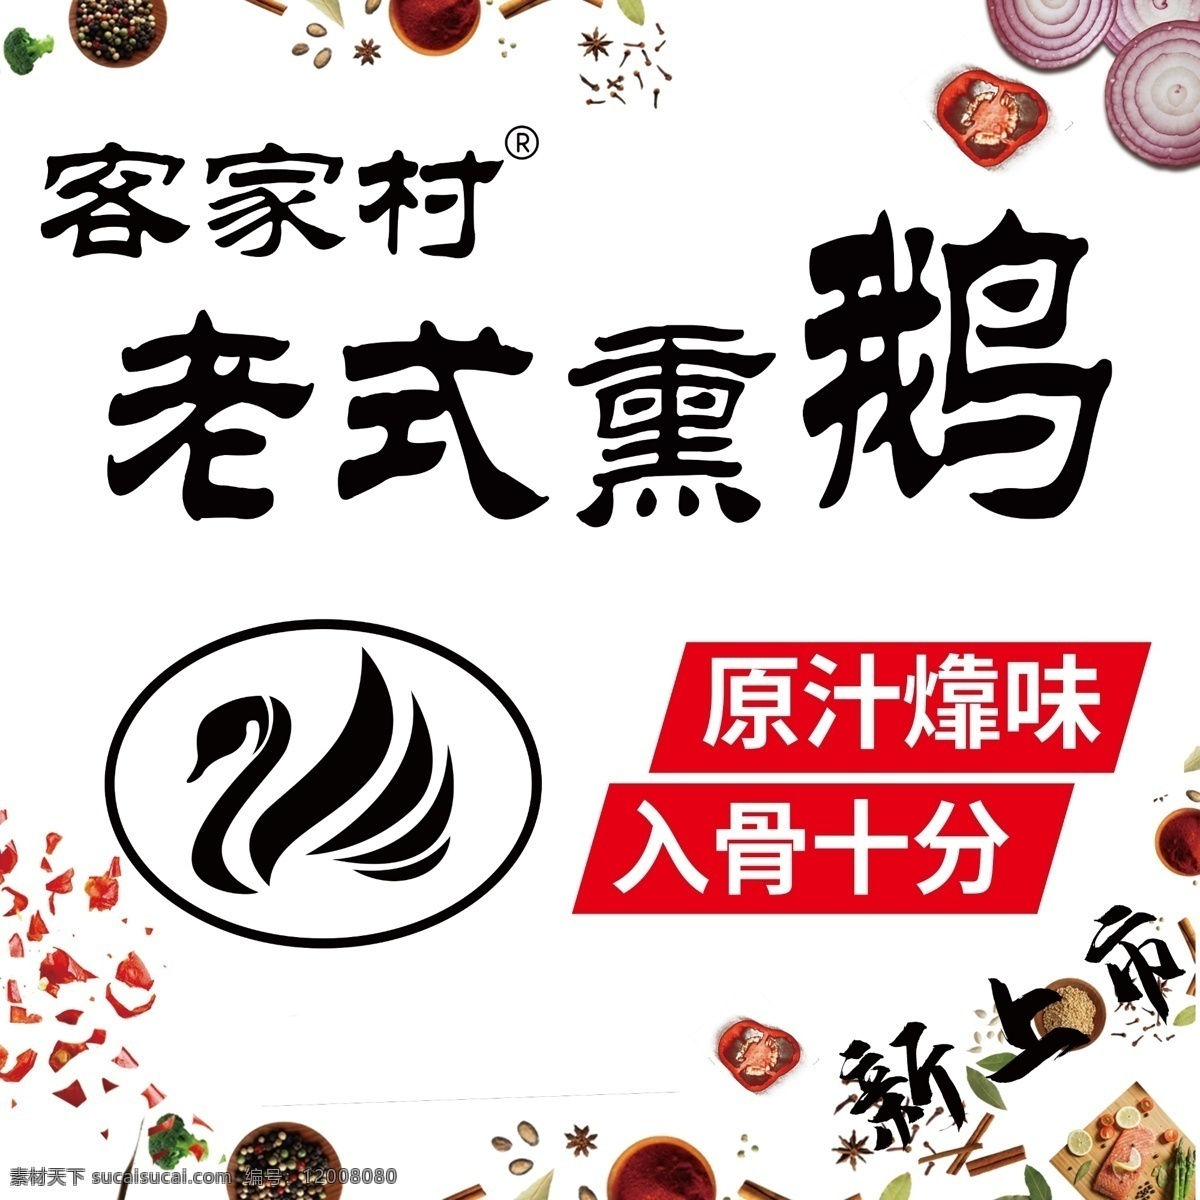 鹅 饿logo 香料 熏鹅海报 分层